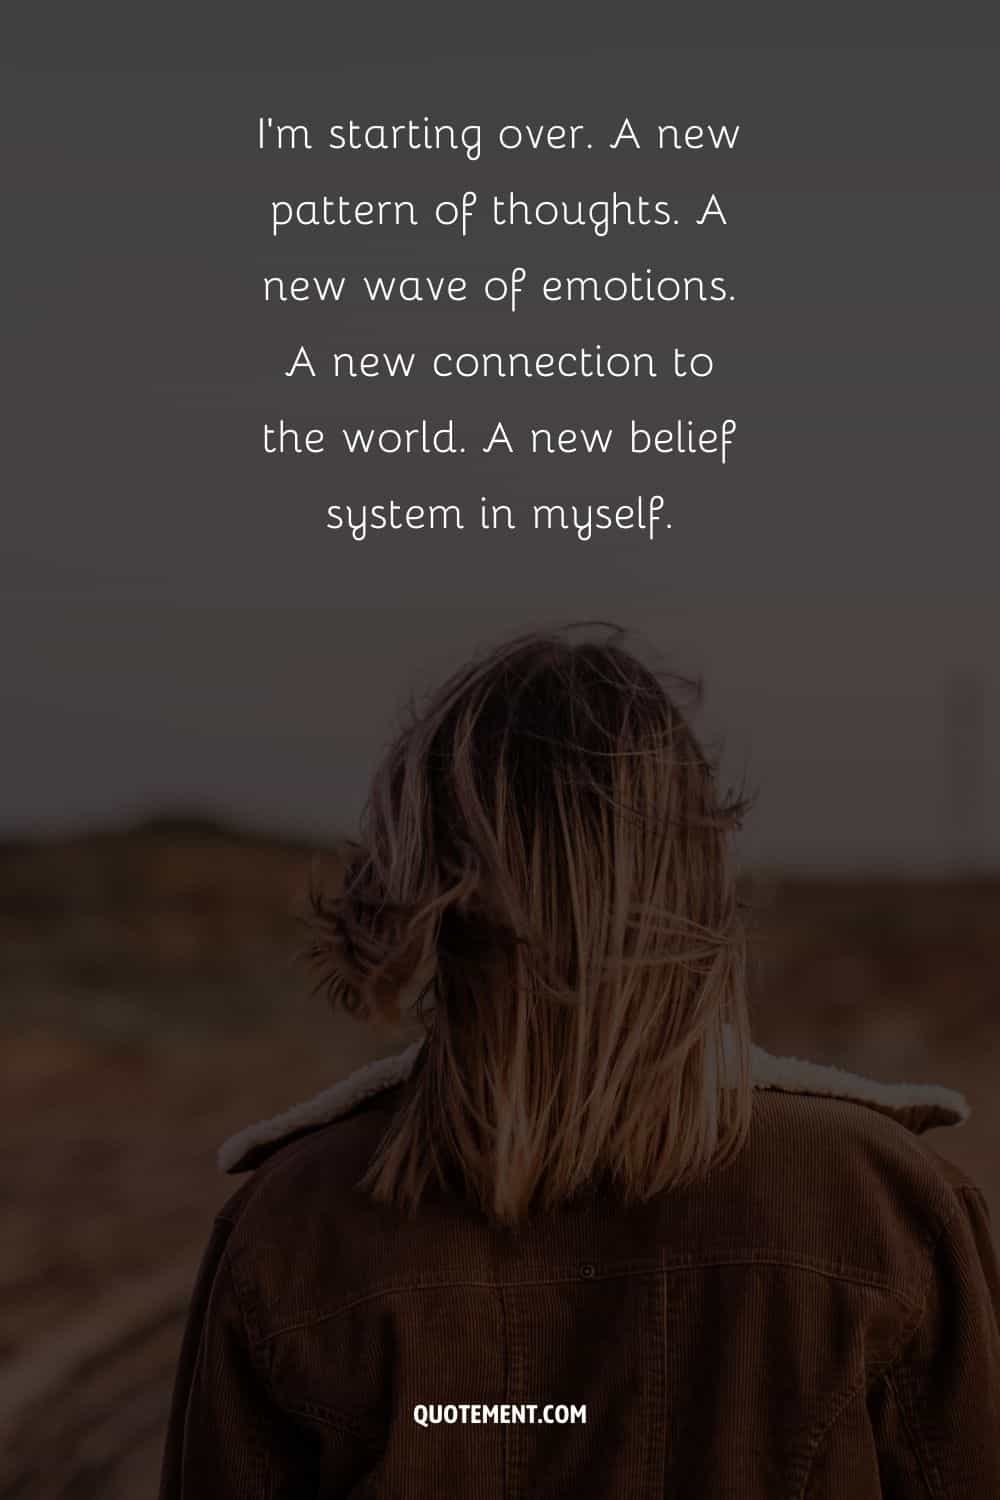 "Estoy empezando de nuevo. Un nuevo patrón de pensamientos. Una nueva ola de emociones. Una nueva conexión con el mundo. Un nuevo sistema de creencias en mí mismo". - Desconocido